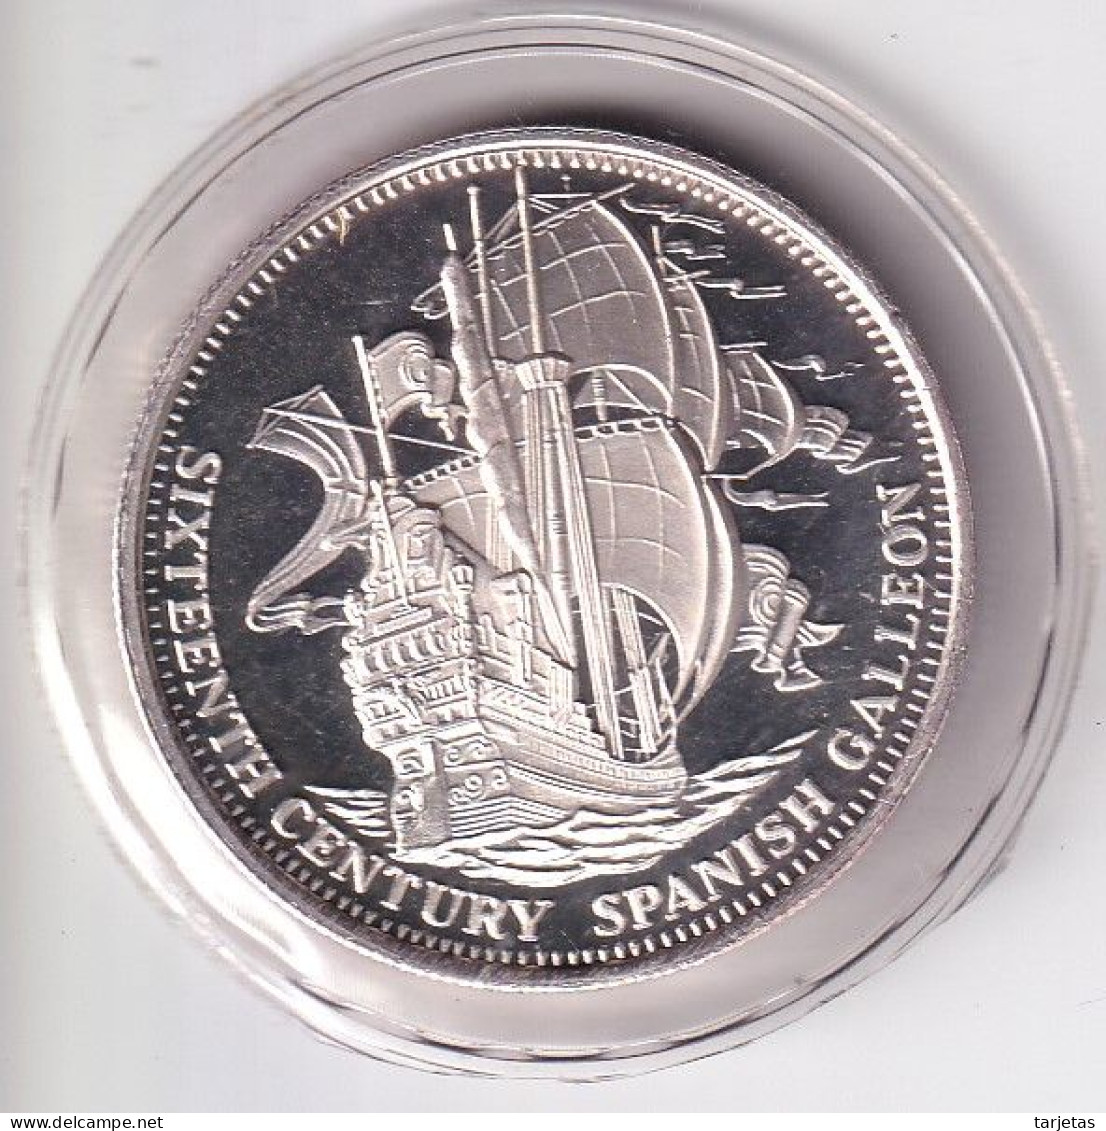 MONEDA DE PLATA DE ESTADOS UNIDOS DE 1 ONZA DE SIXTEENTH VENTURY SPANISH CALLEON (BARCO-SHIP) - Commemoratifs